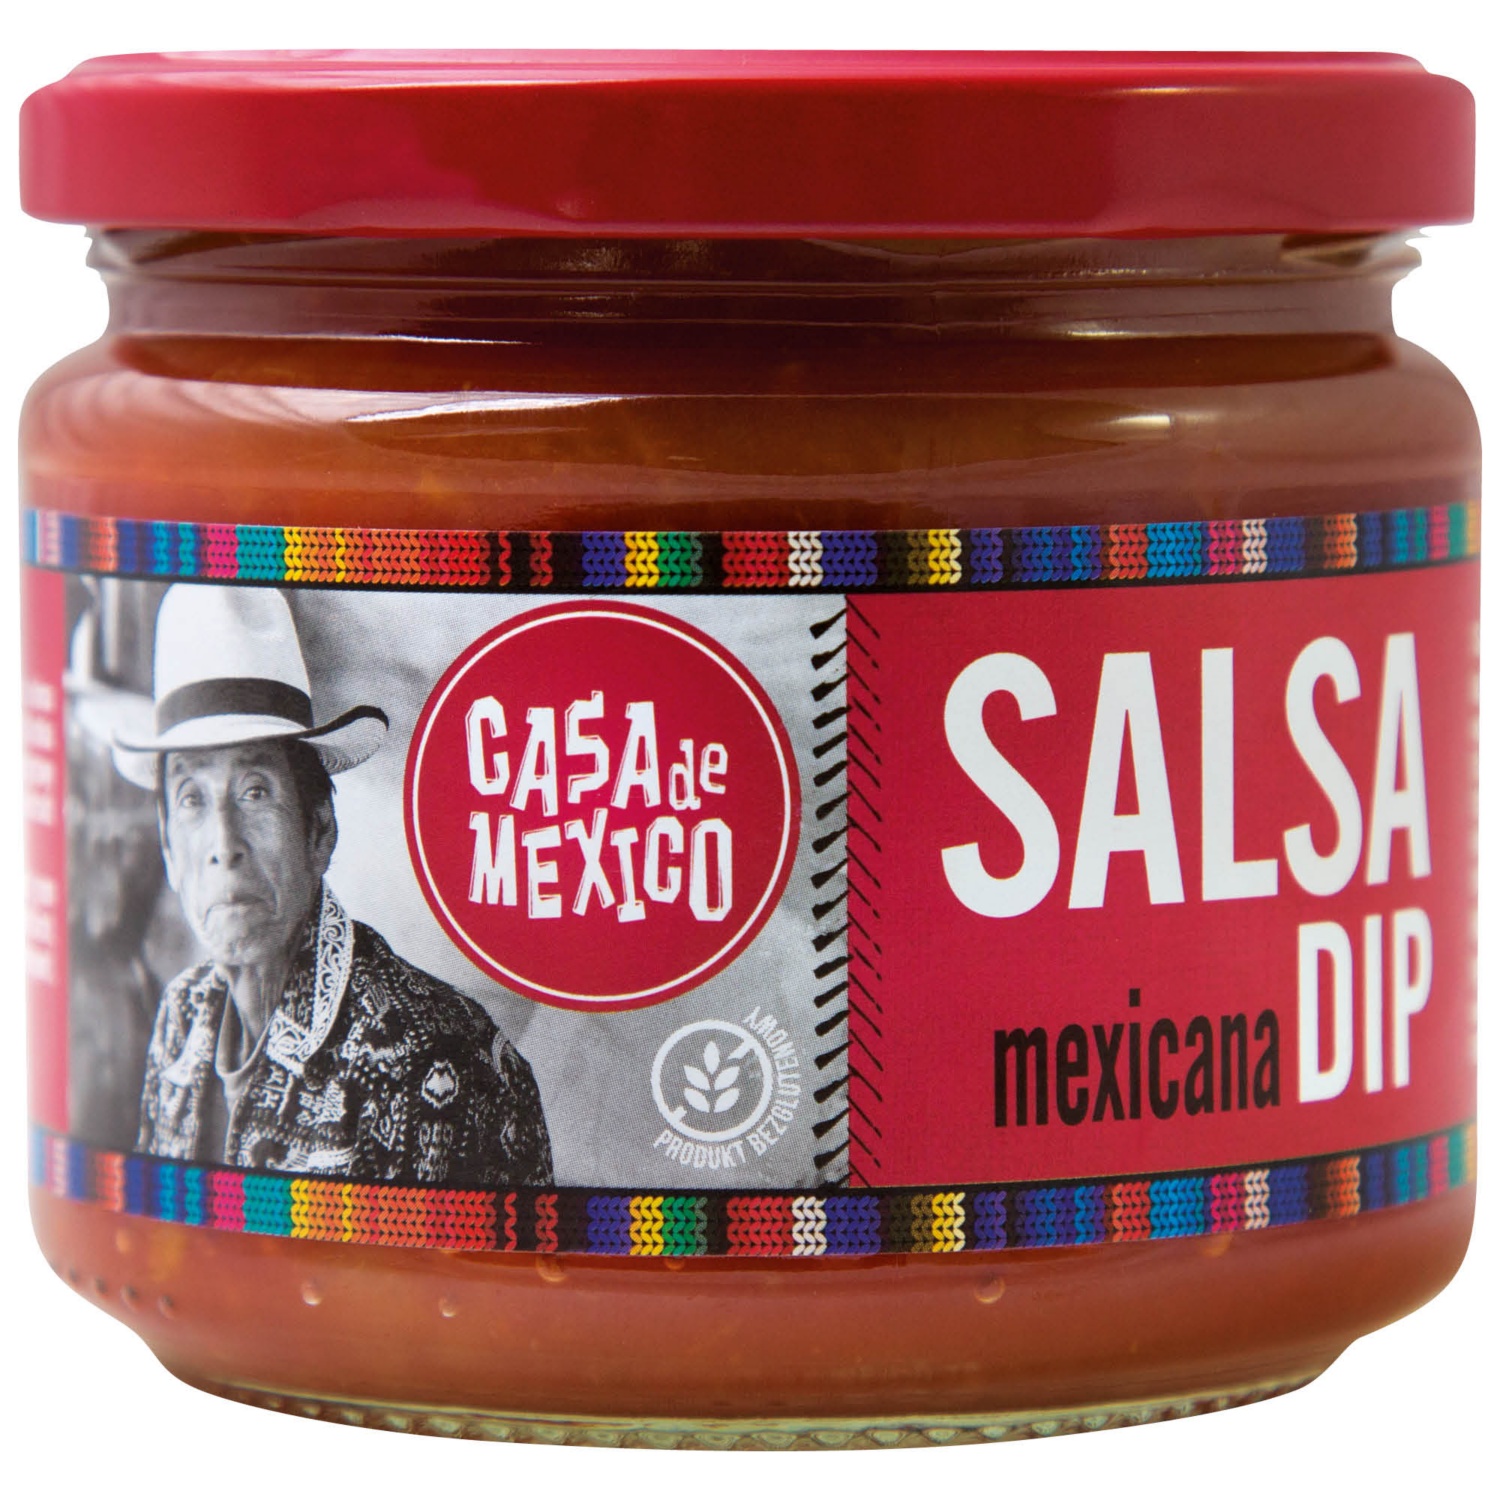 Salsa Dip Mix, Mexicana